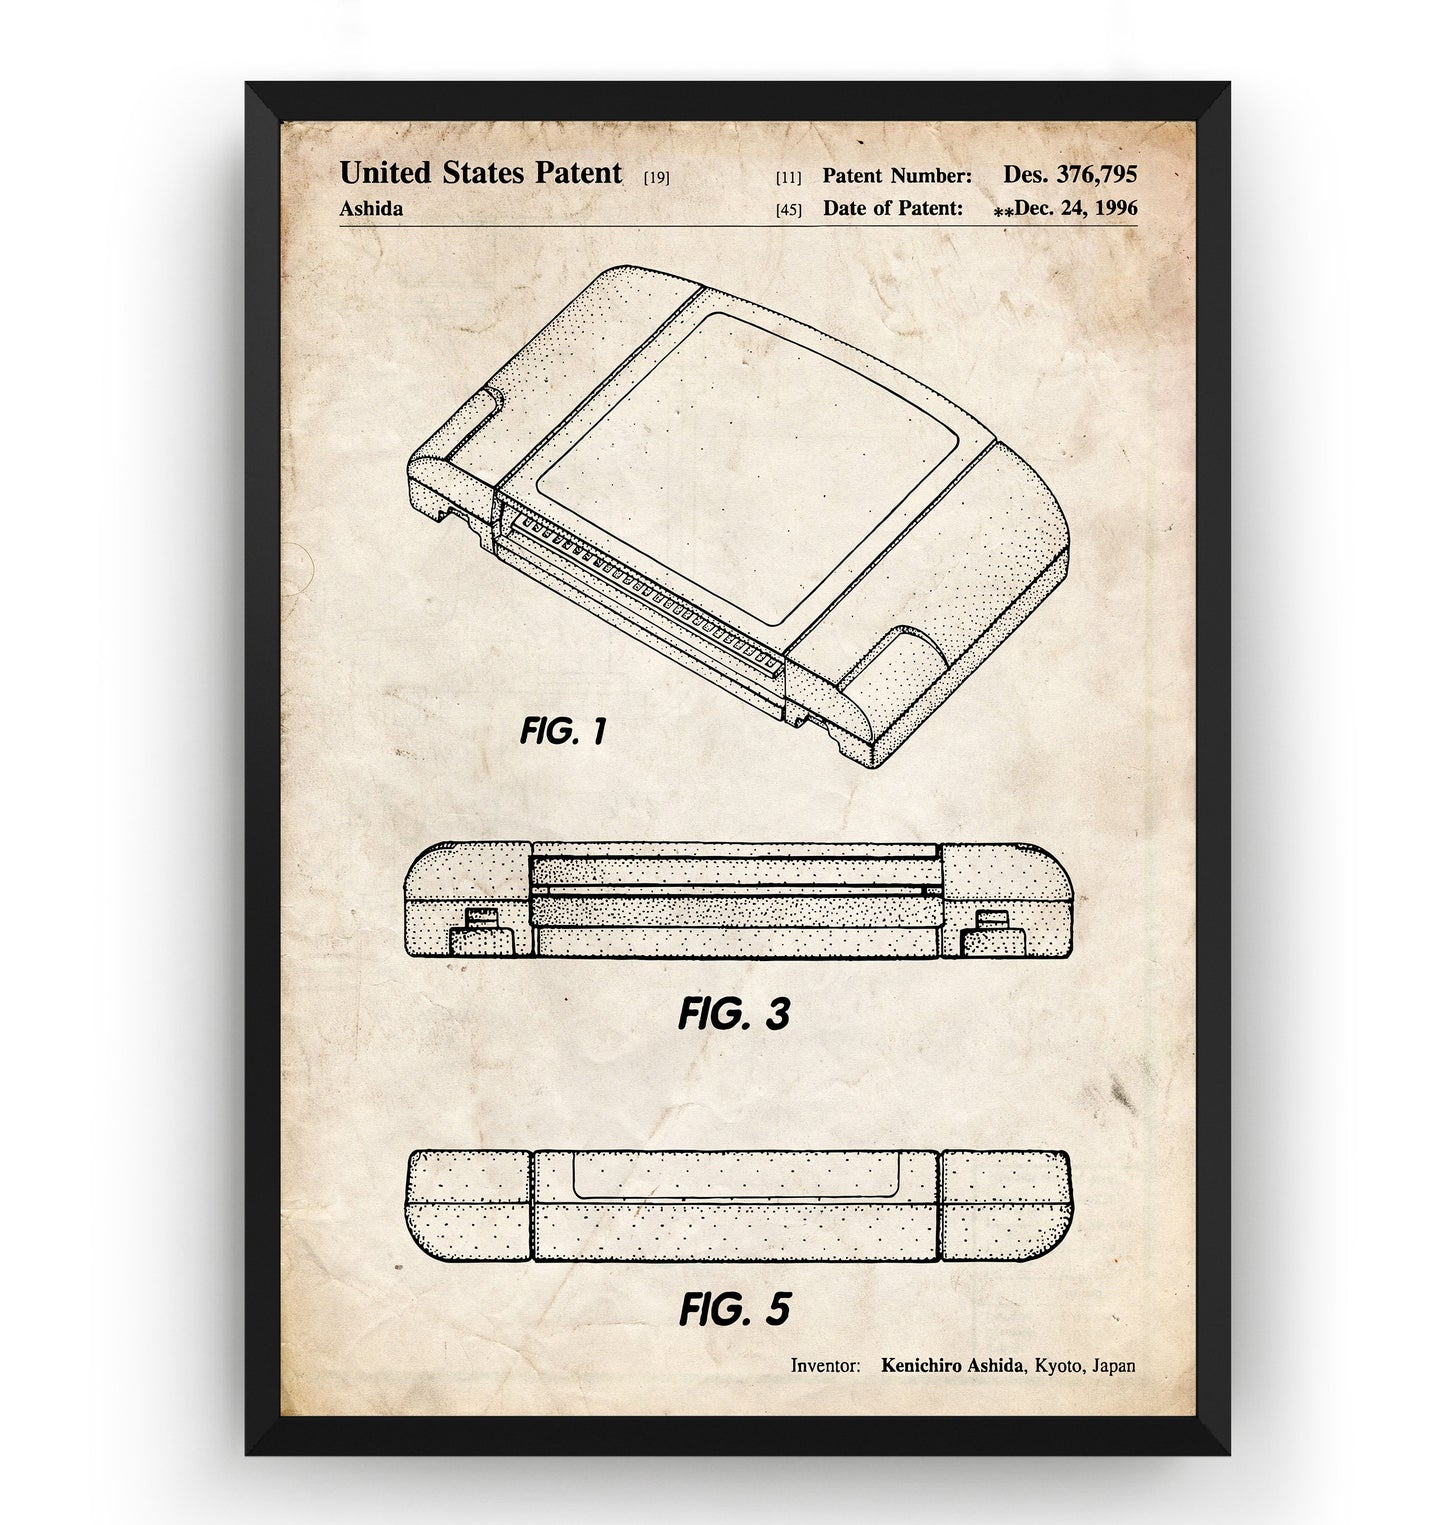 N64 Cartridge 1996 Patent Print - Magic Posters